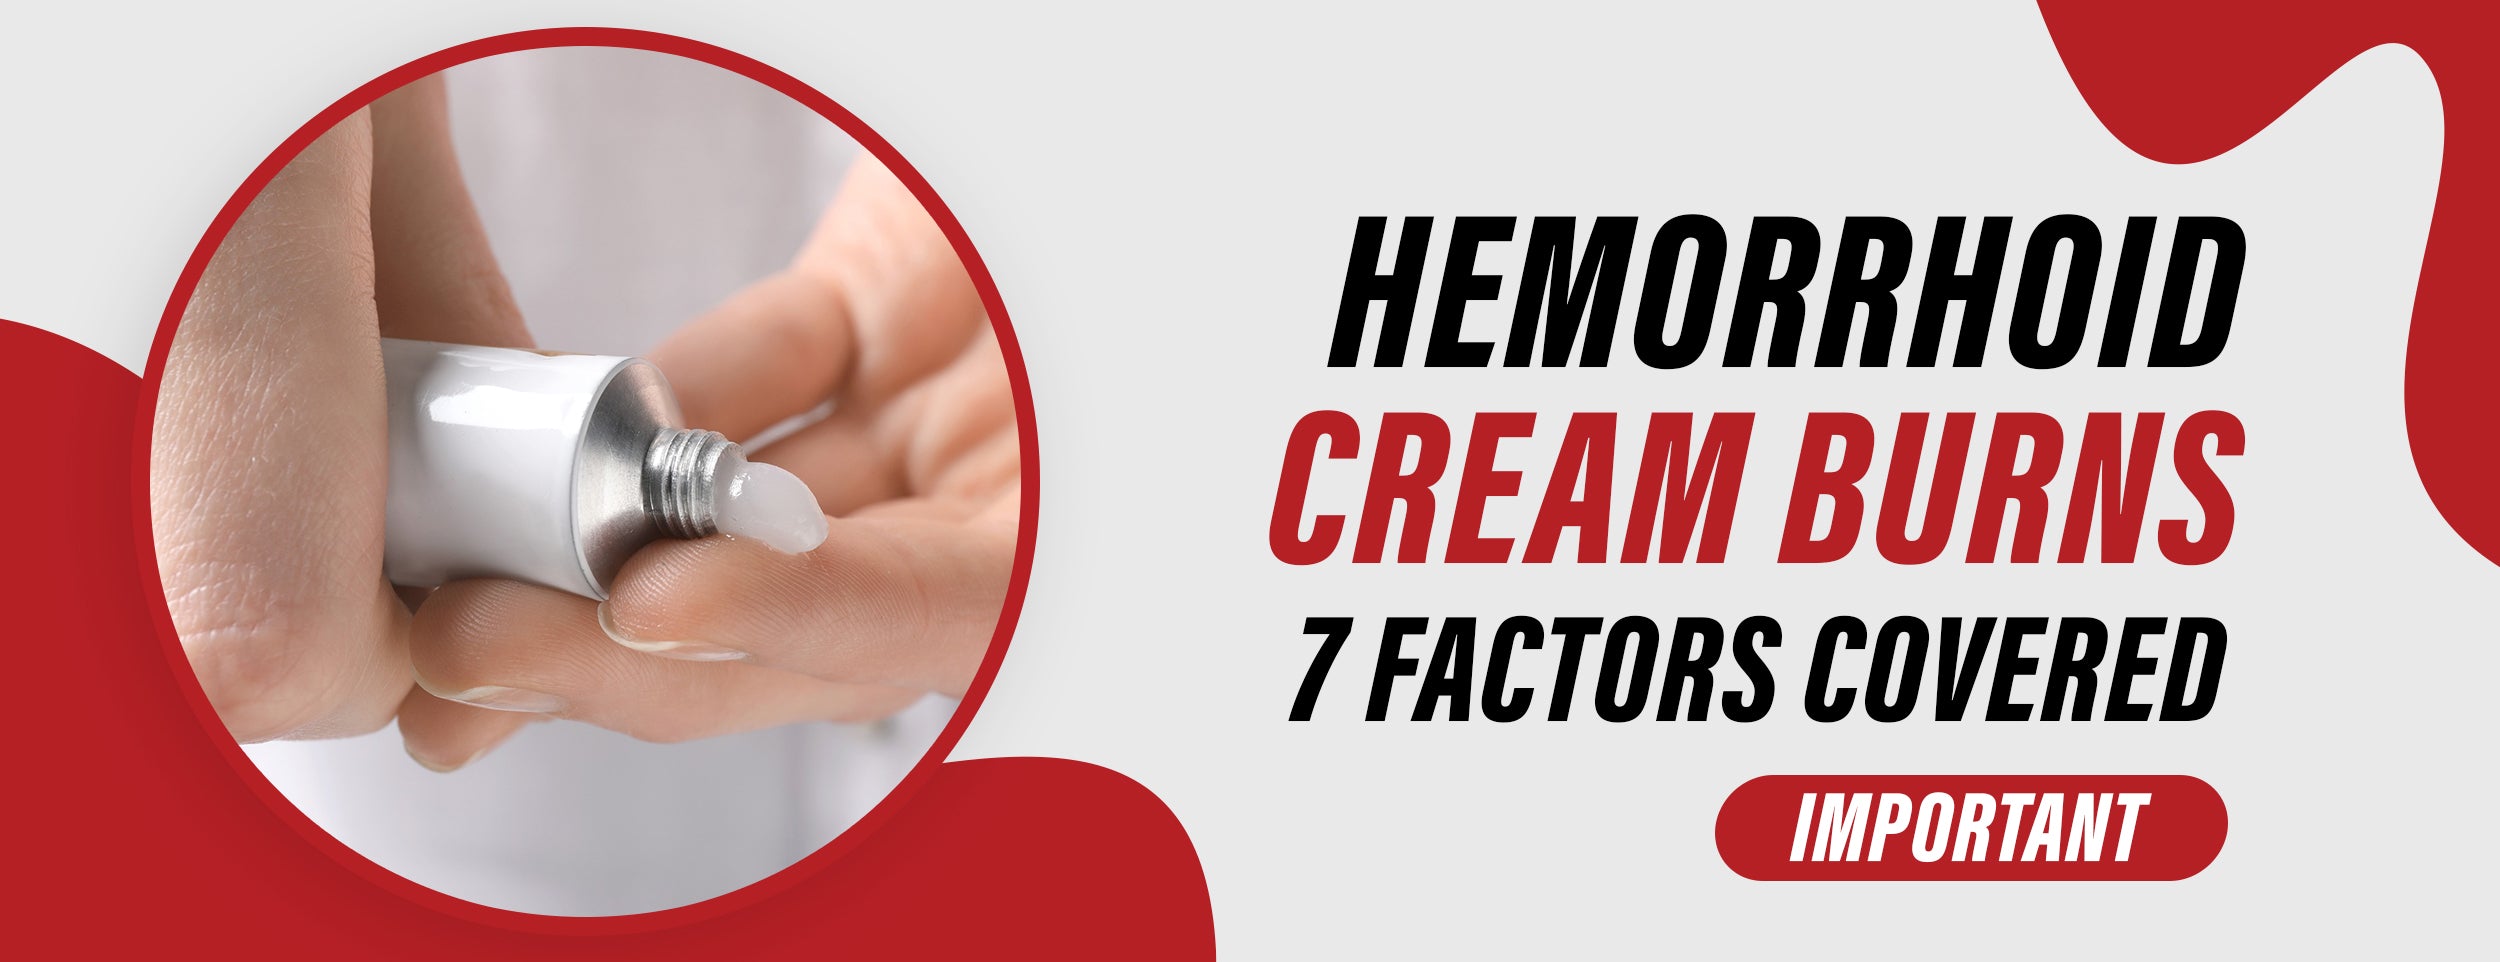 Hemorrhoid Cream Burns: 7 Factors Covered [Important]